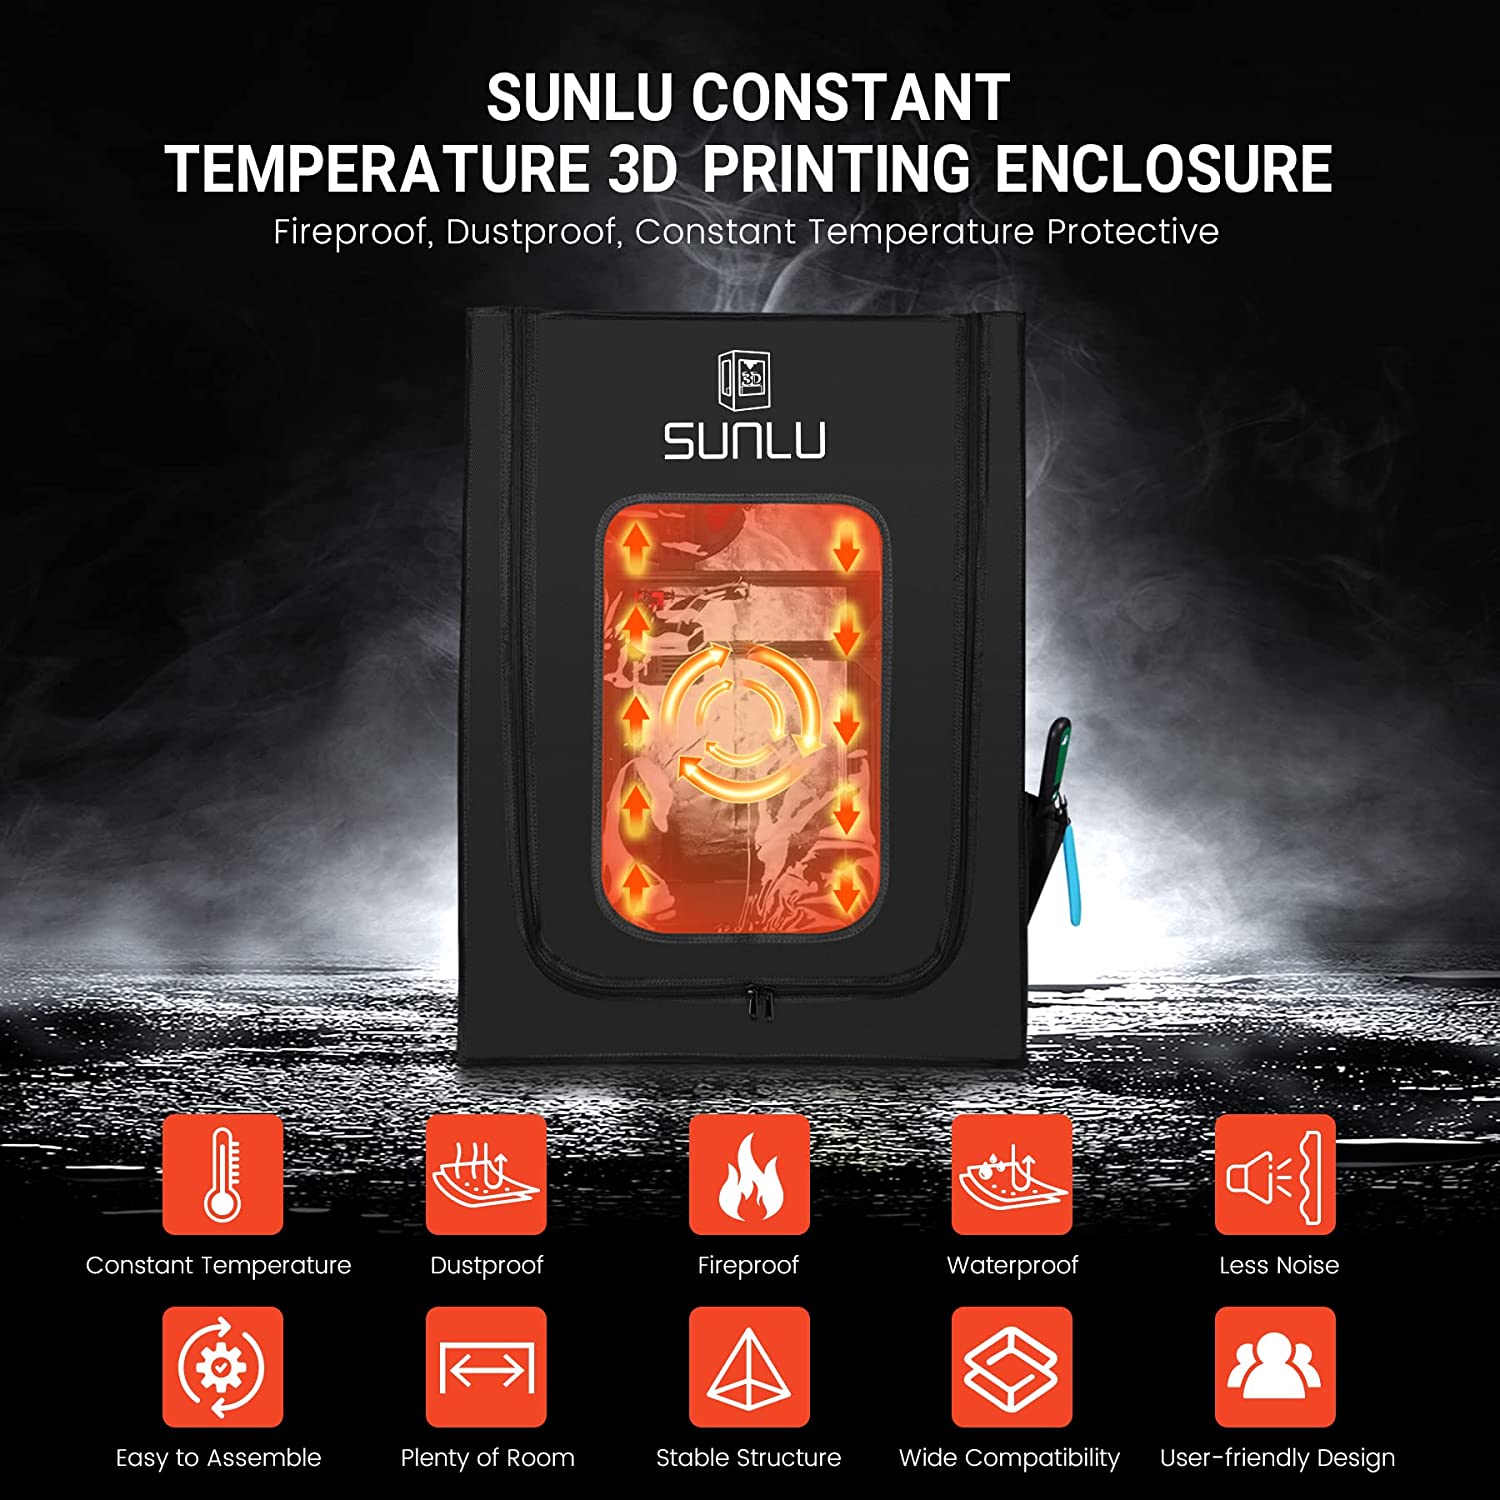 Sunlu T3 FDM 3D Printer review